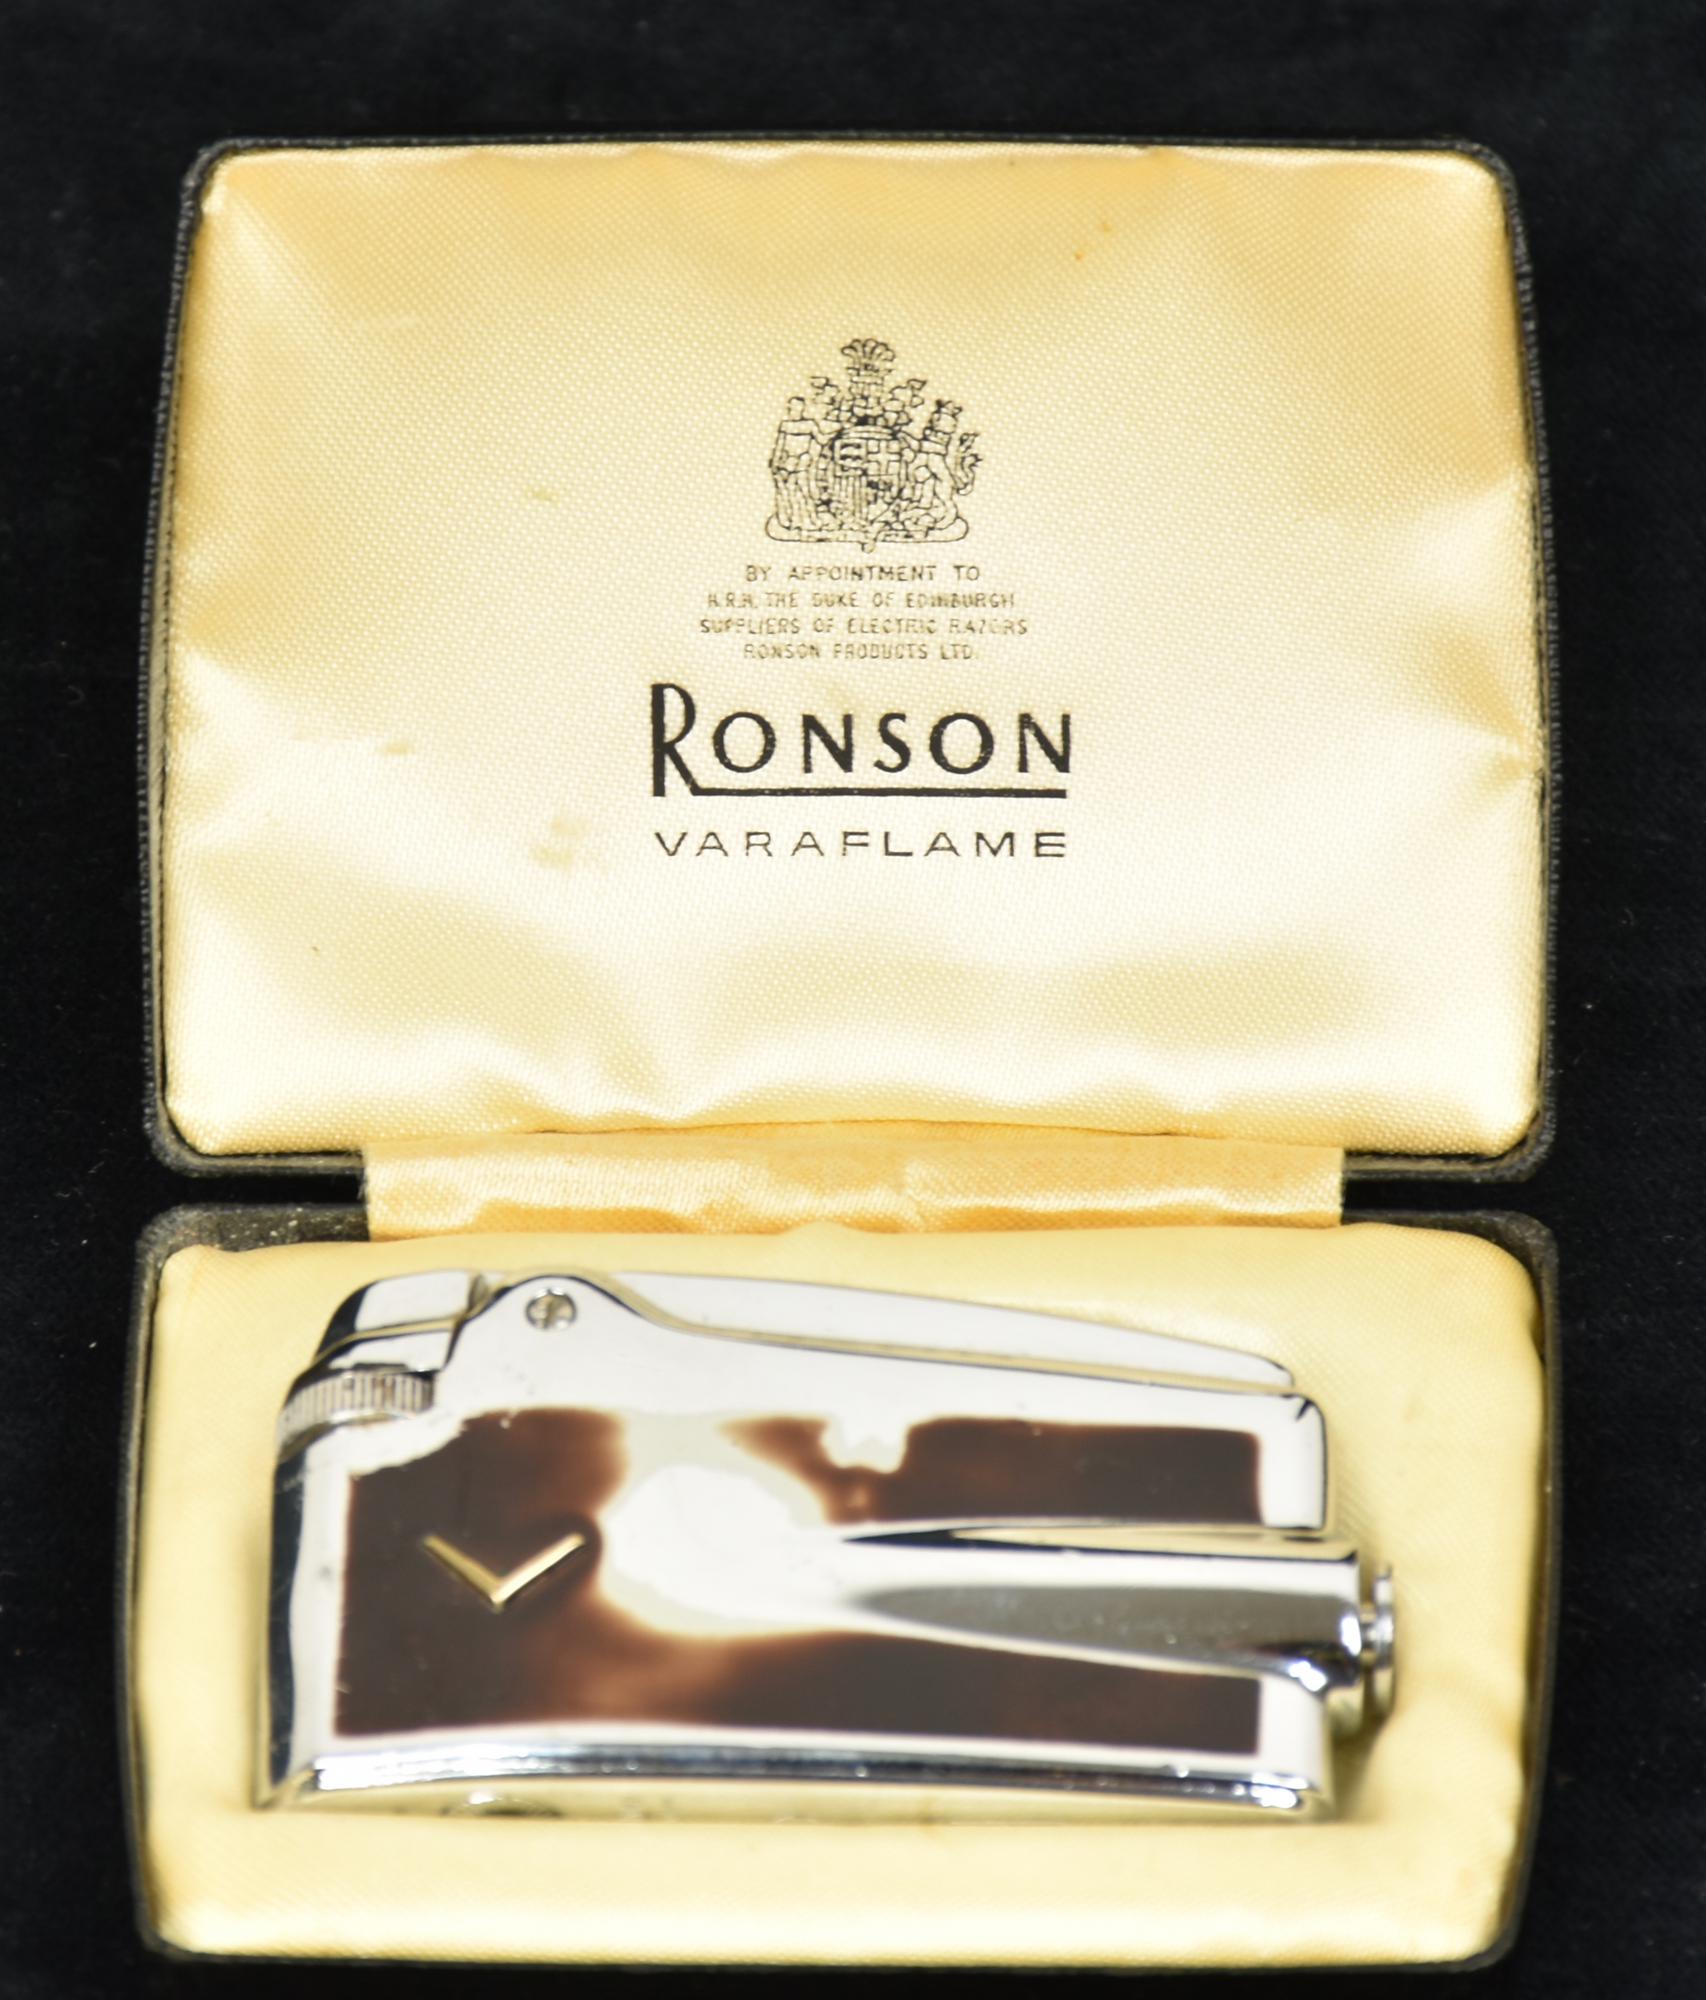 ACCENDINO RONSON accendino Ronson modello Varaflame, completo di